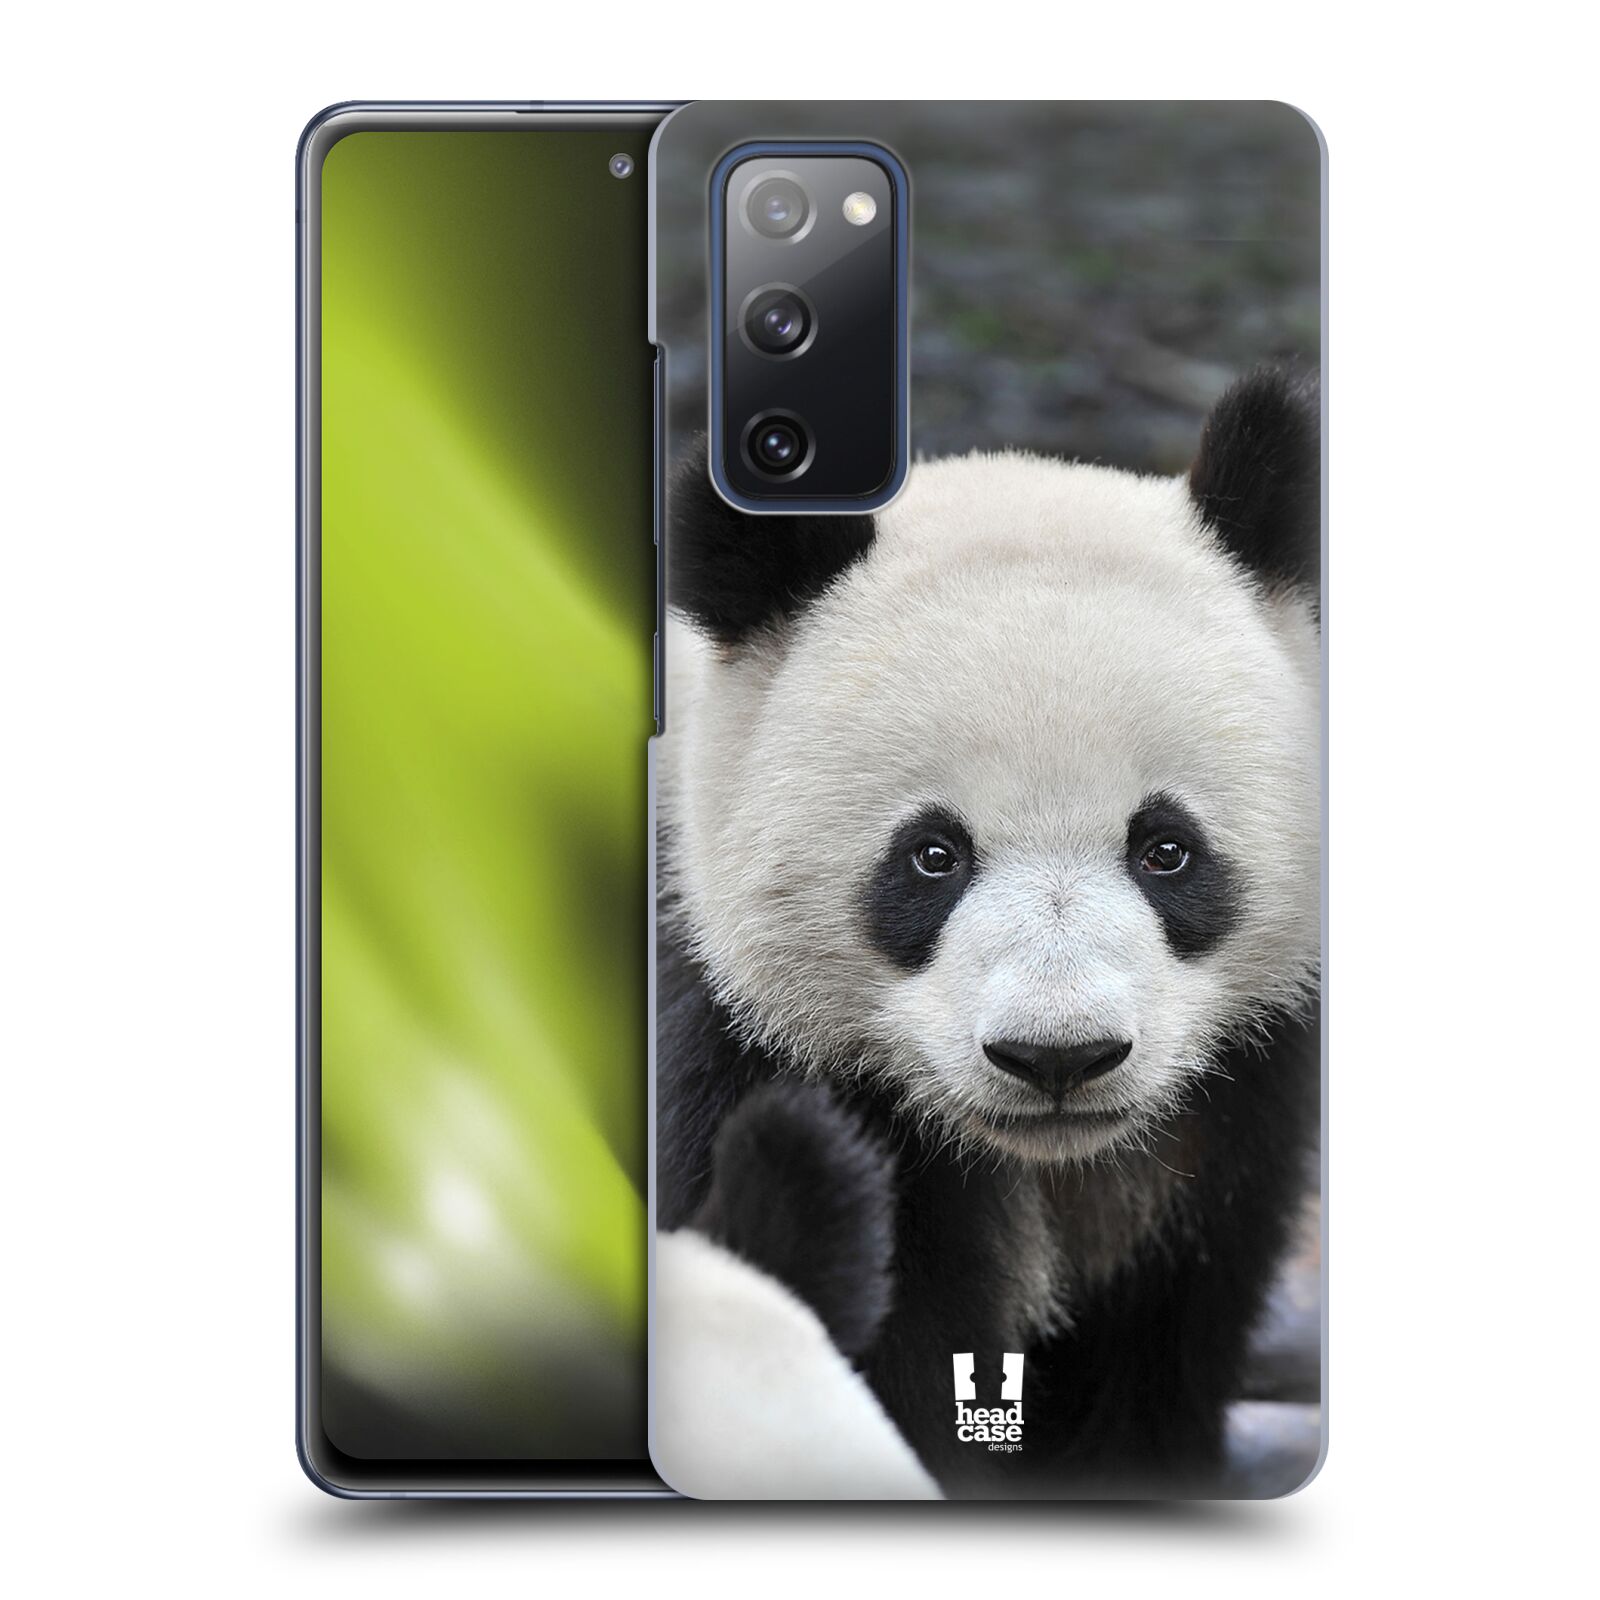 Zadní obal pro mobil Samsung Galaxy S20 FE / S20 FE 5G - HEAD CASE - Svět zvířat medvěd panda